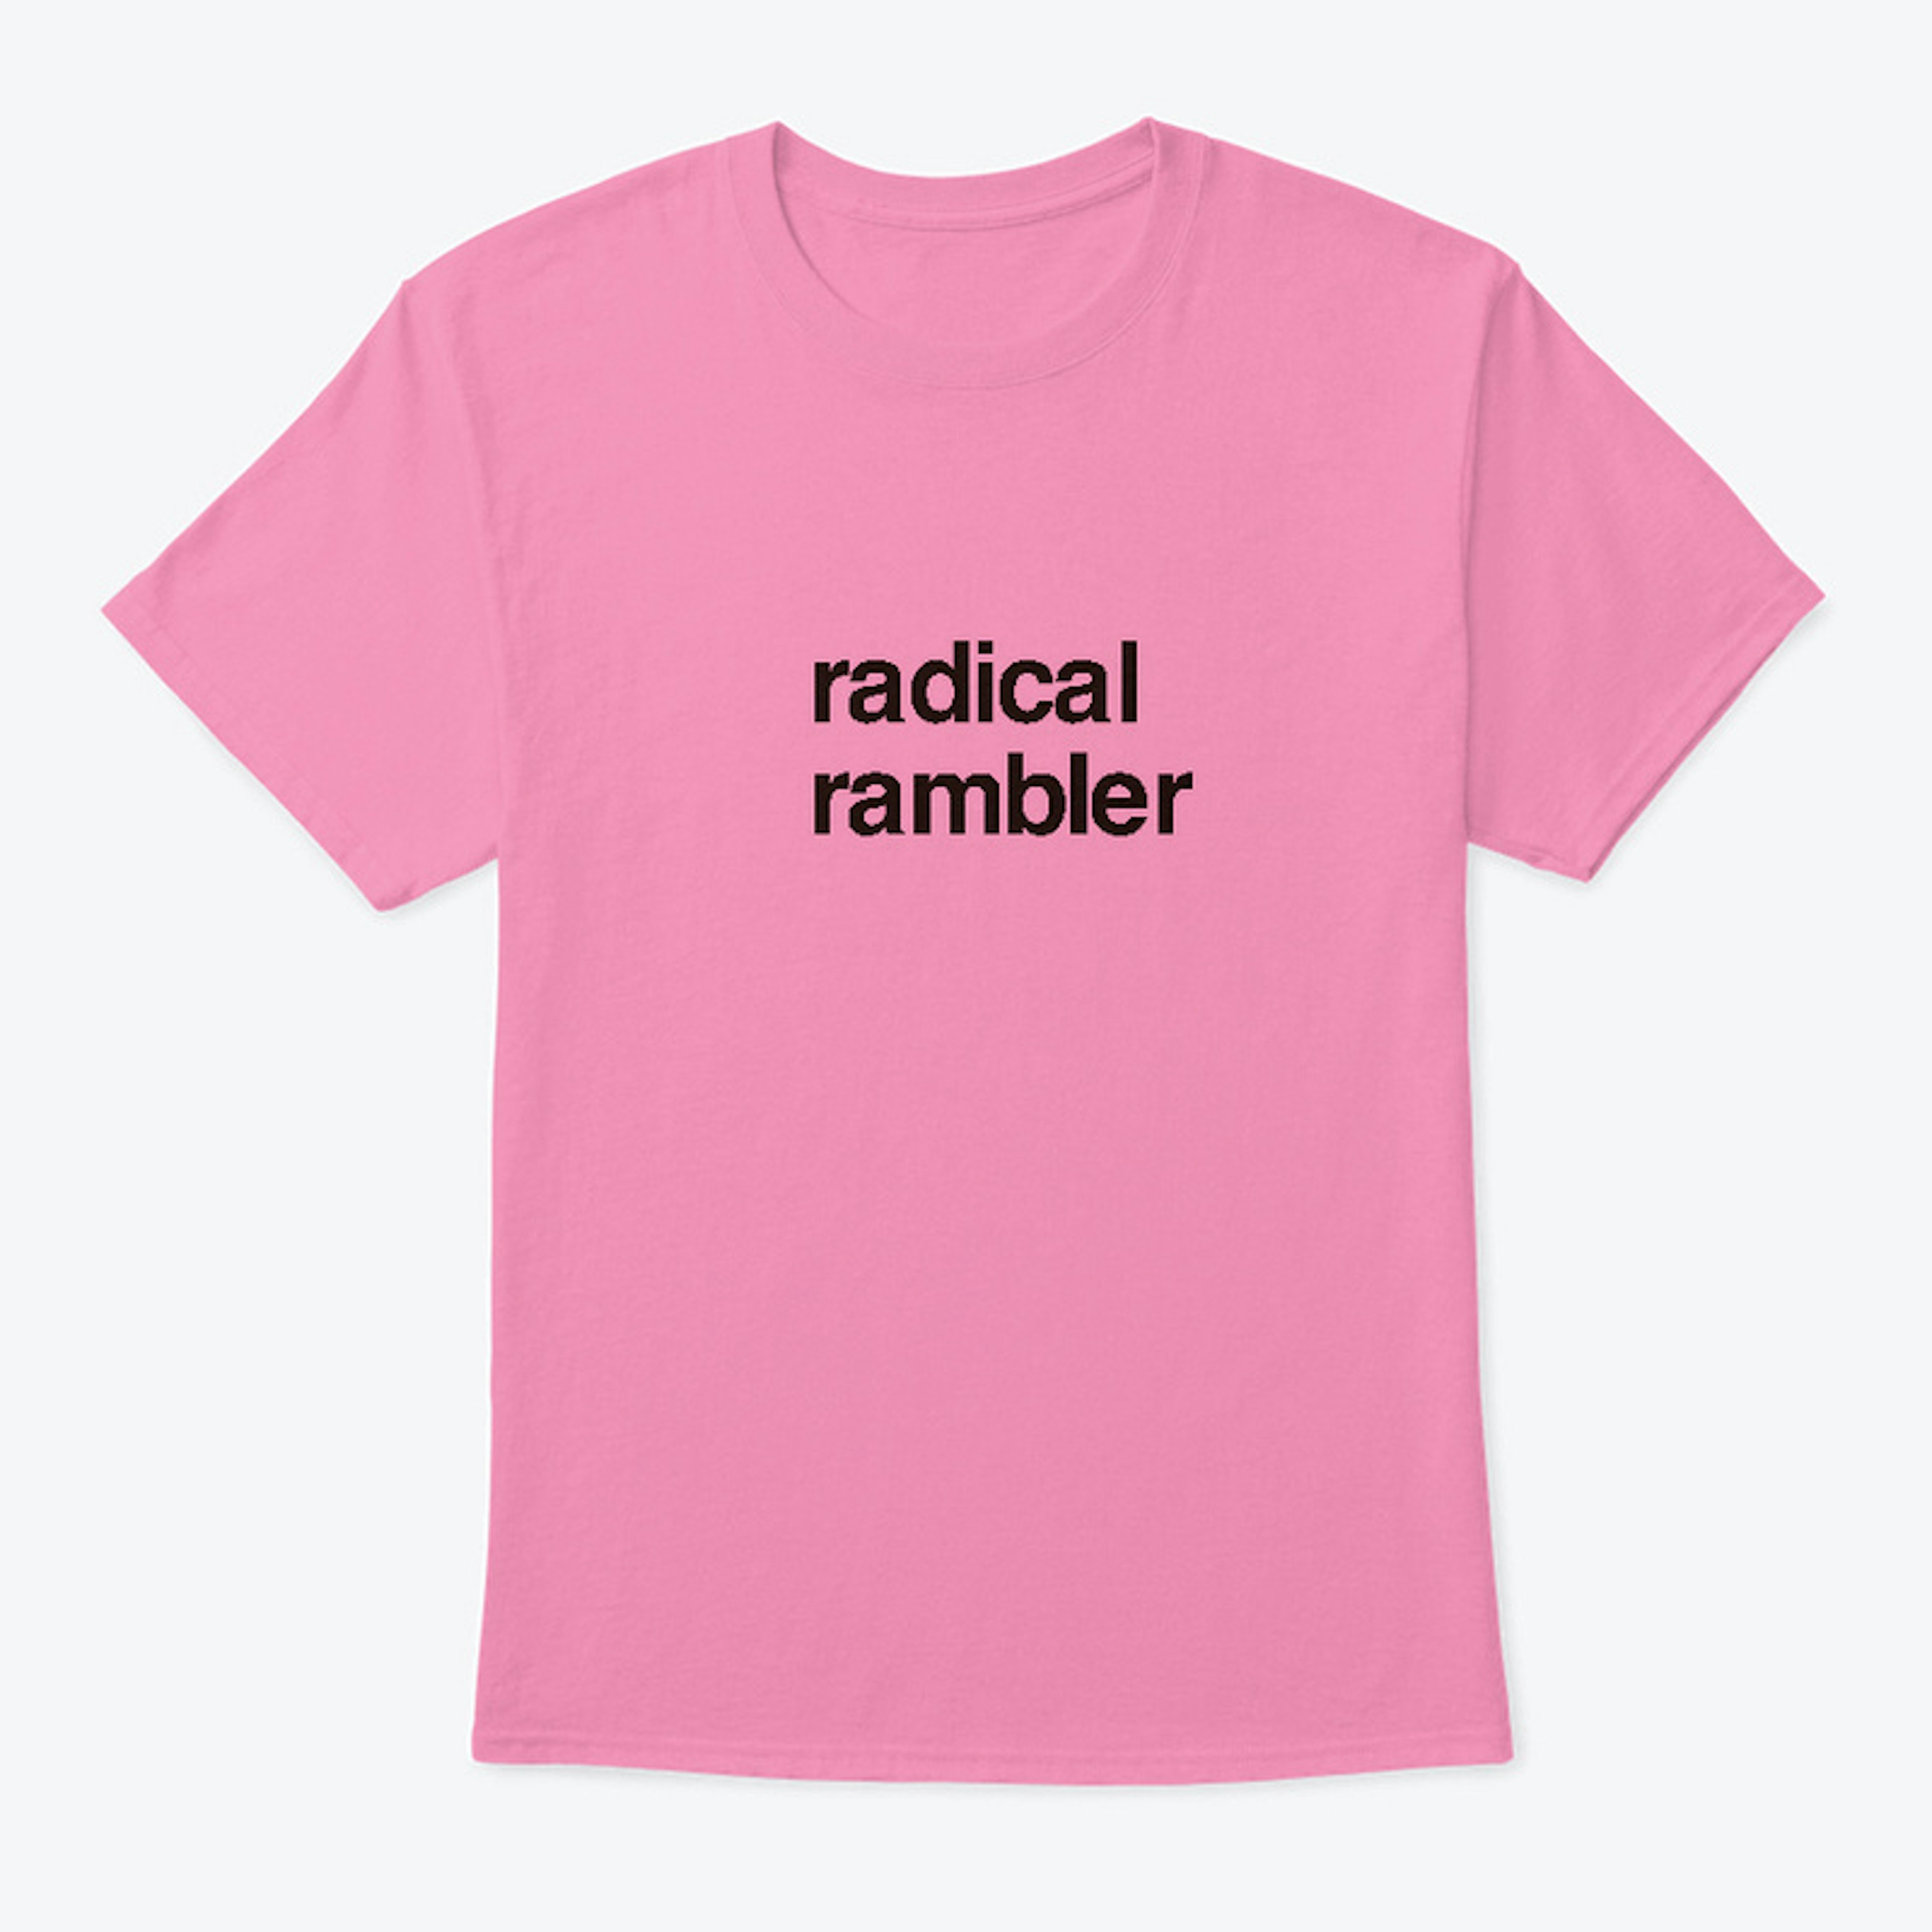 radical rambler